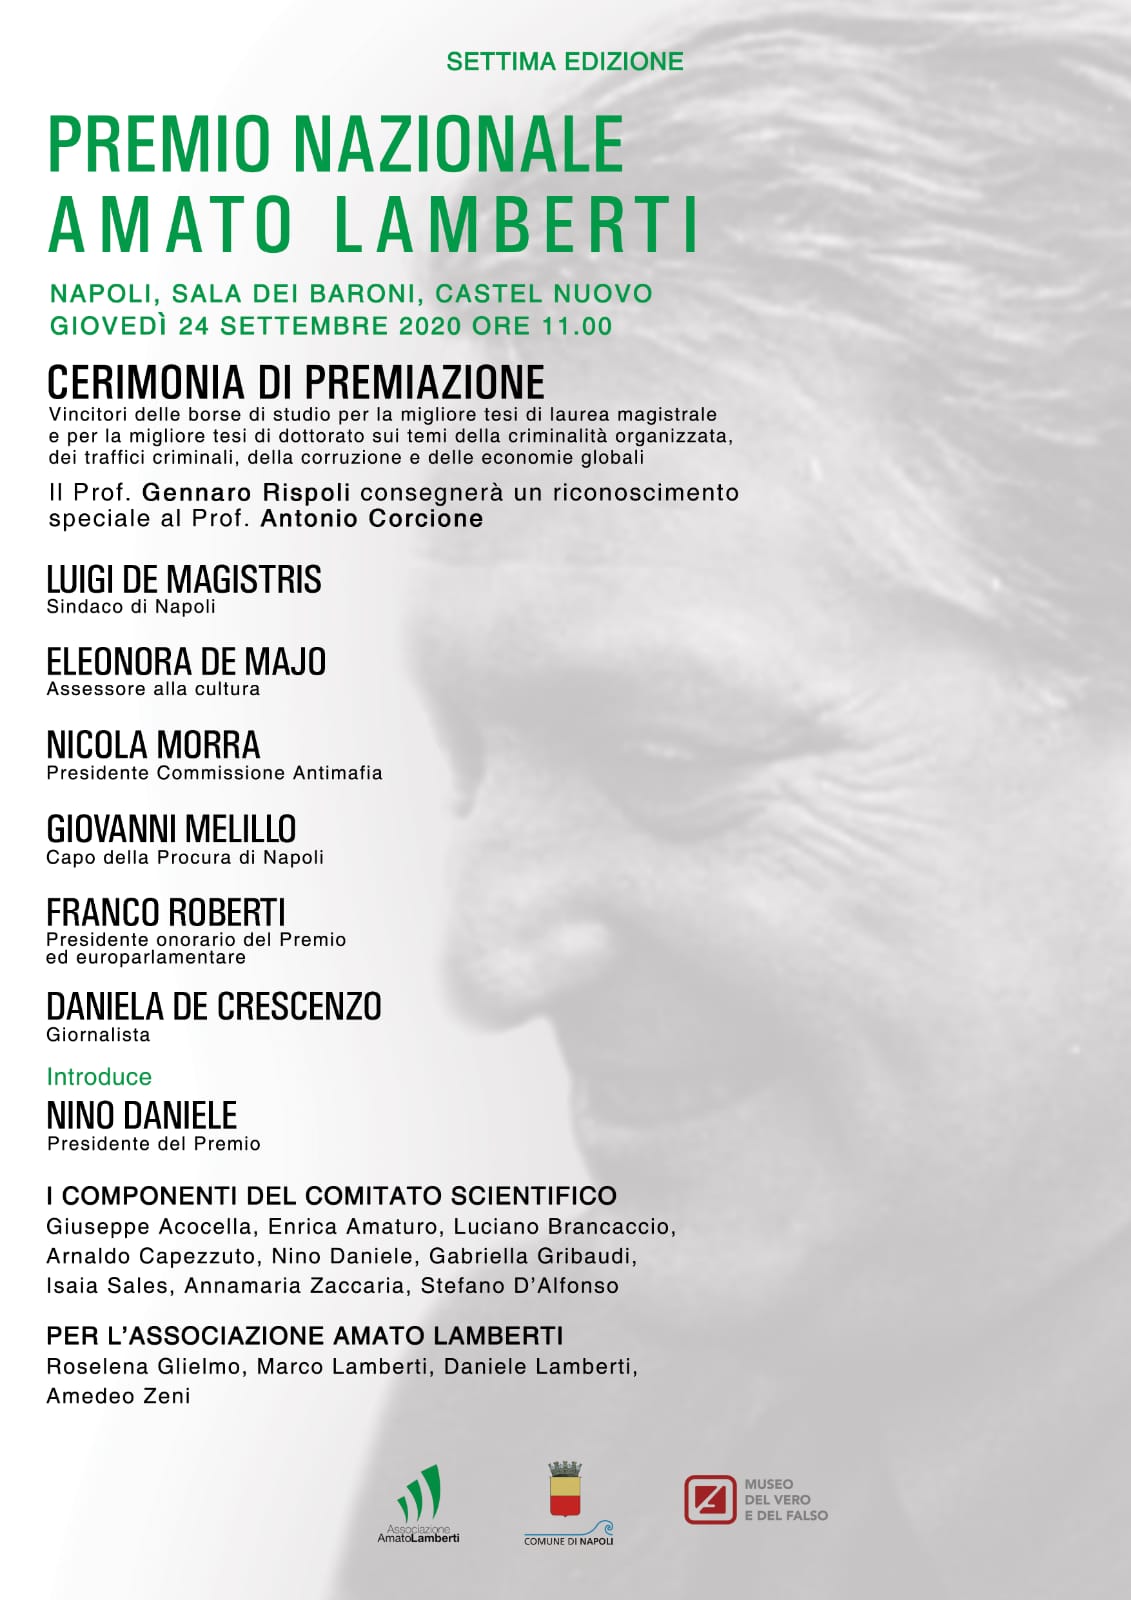 Premio Nazionale "Amato Lamberti": giovedì 24 settembre la premiazione al Maschio Angioino